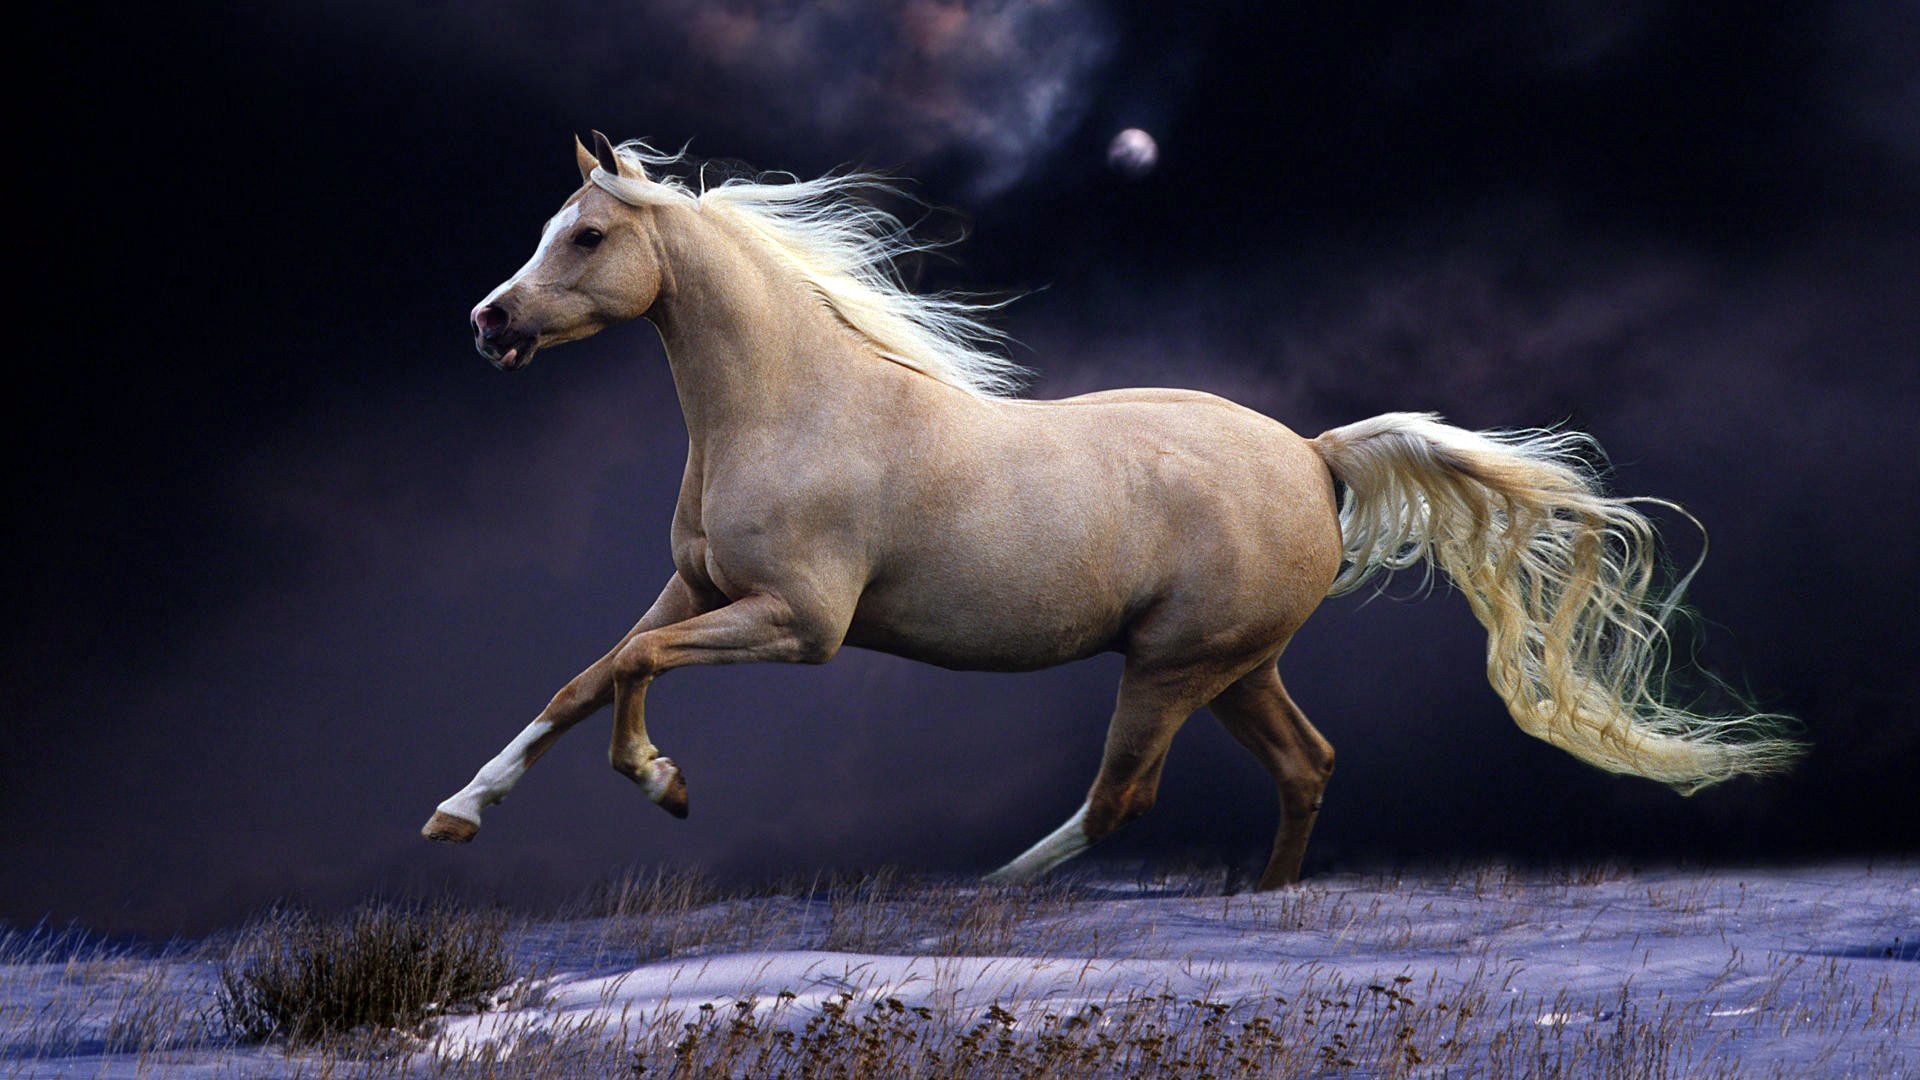 running, animals, sky, night, beautiful, mane, horse, run